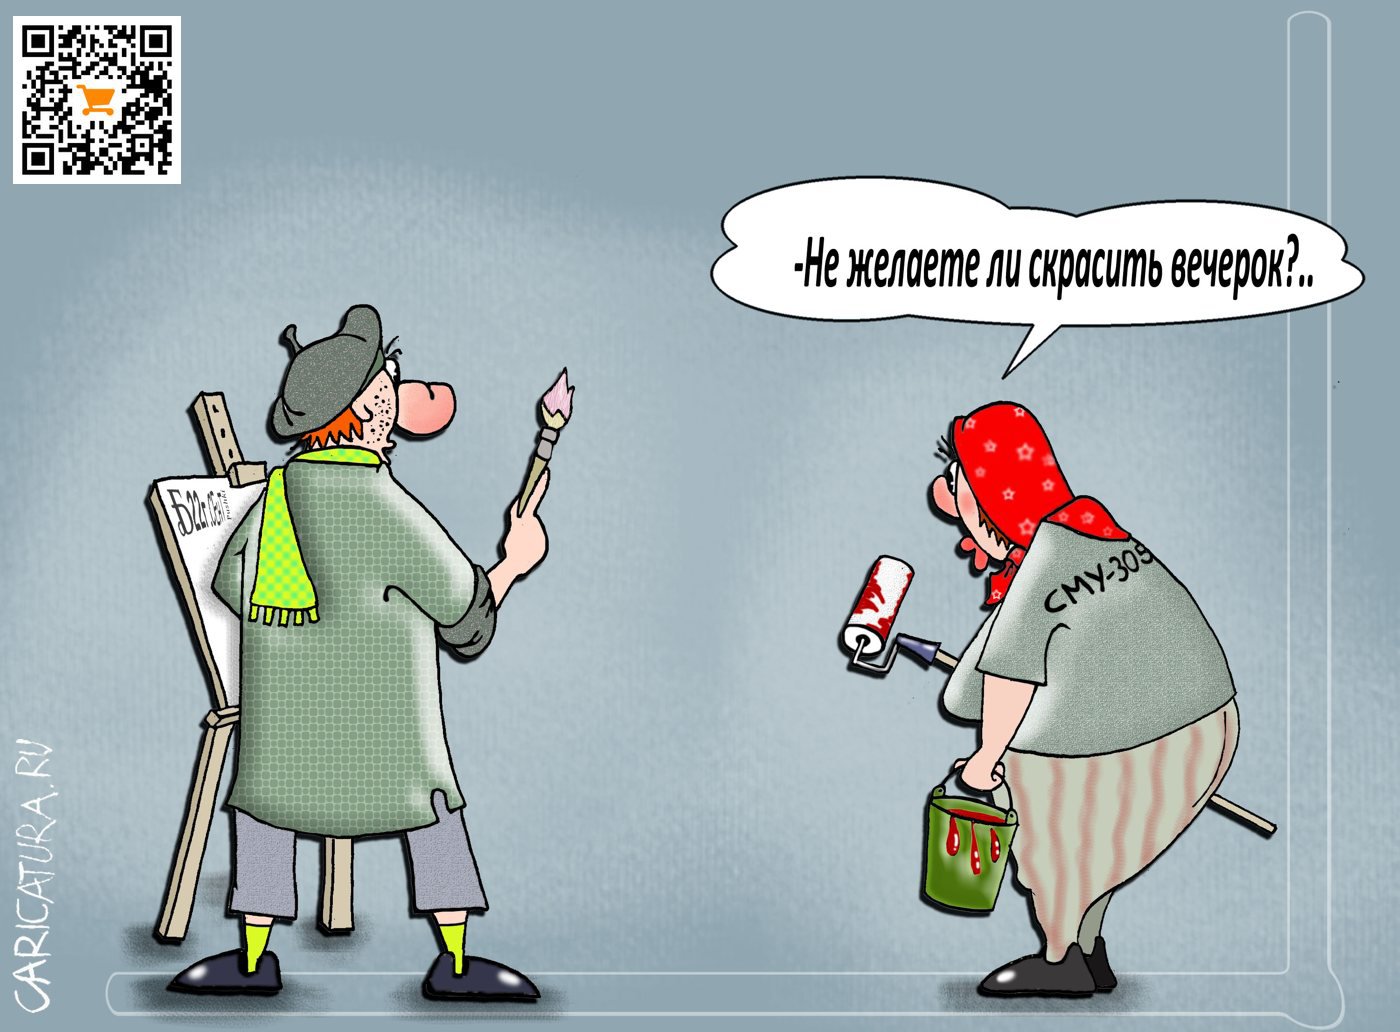 Карикатура "Про скрашенный вечерок", Борис Демин